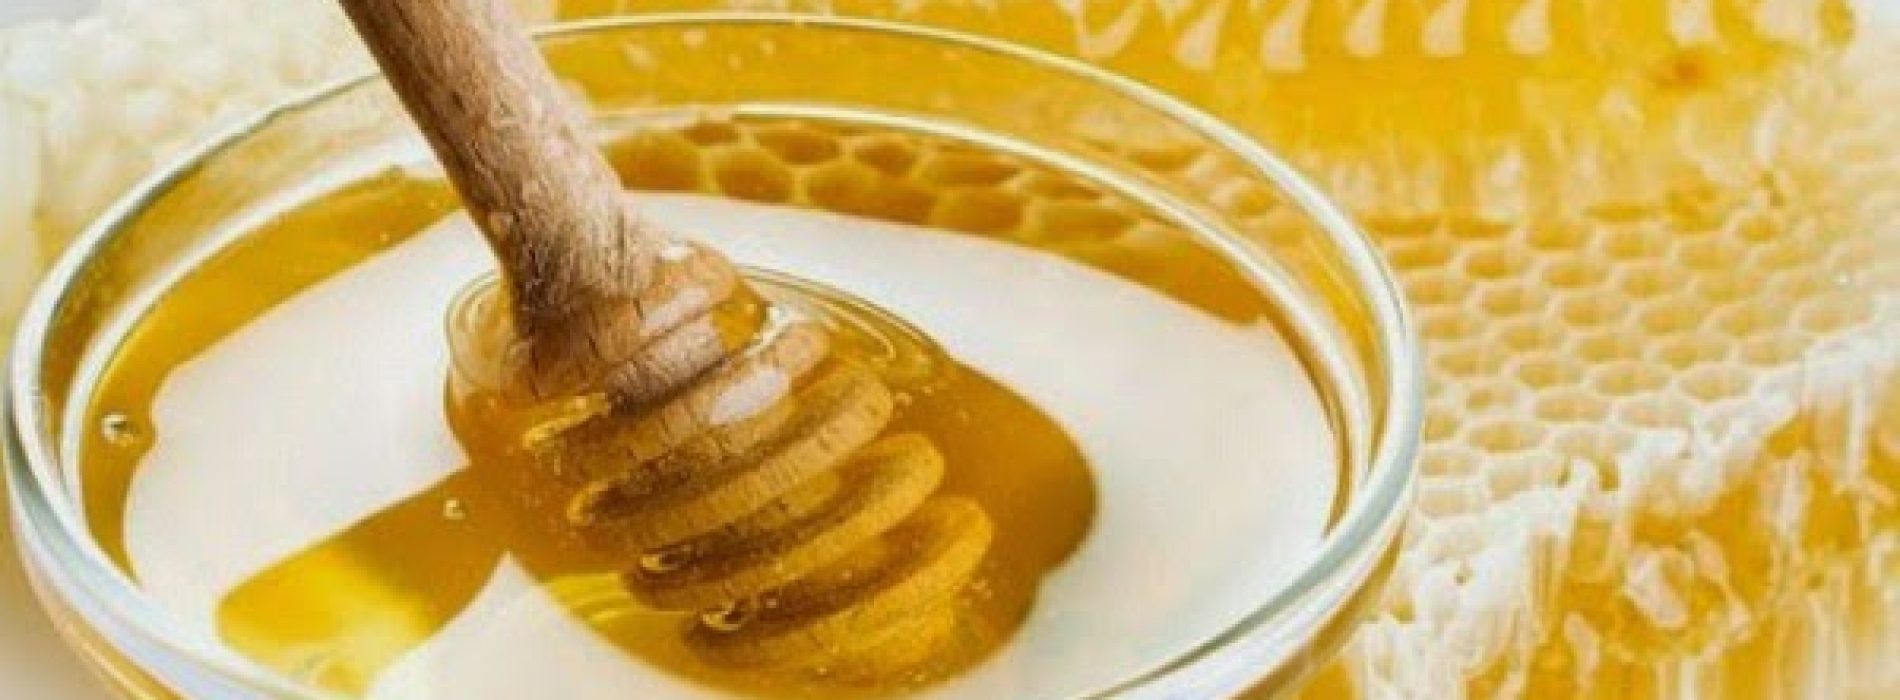 8 manieren om vast te stellen of honing echt is of nep